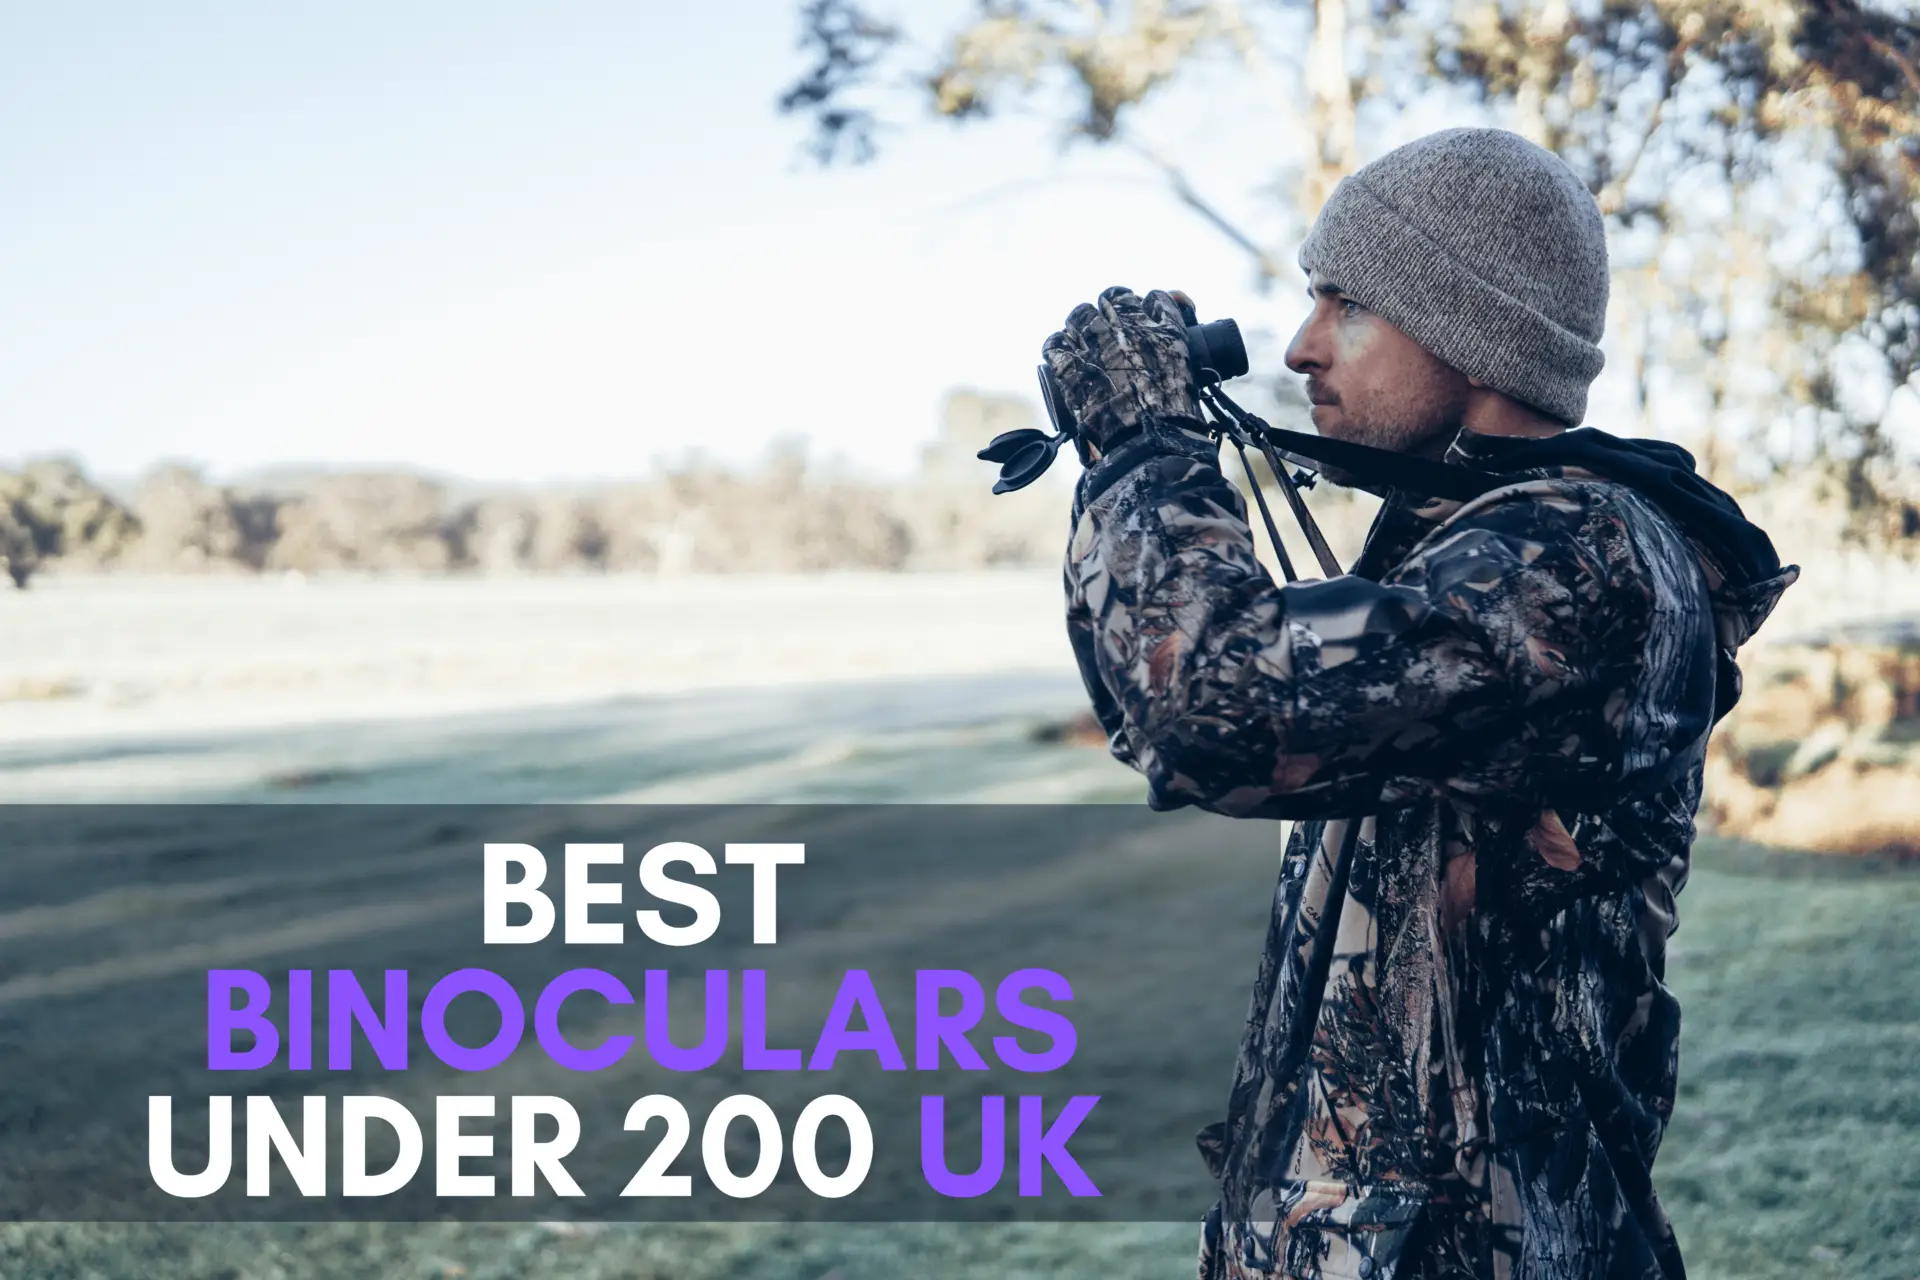 Best binoculars under 200 UK